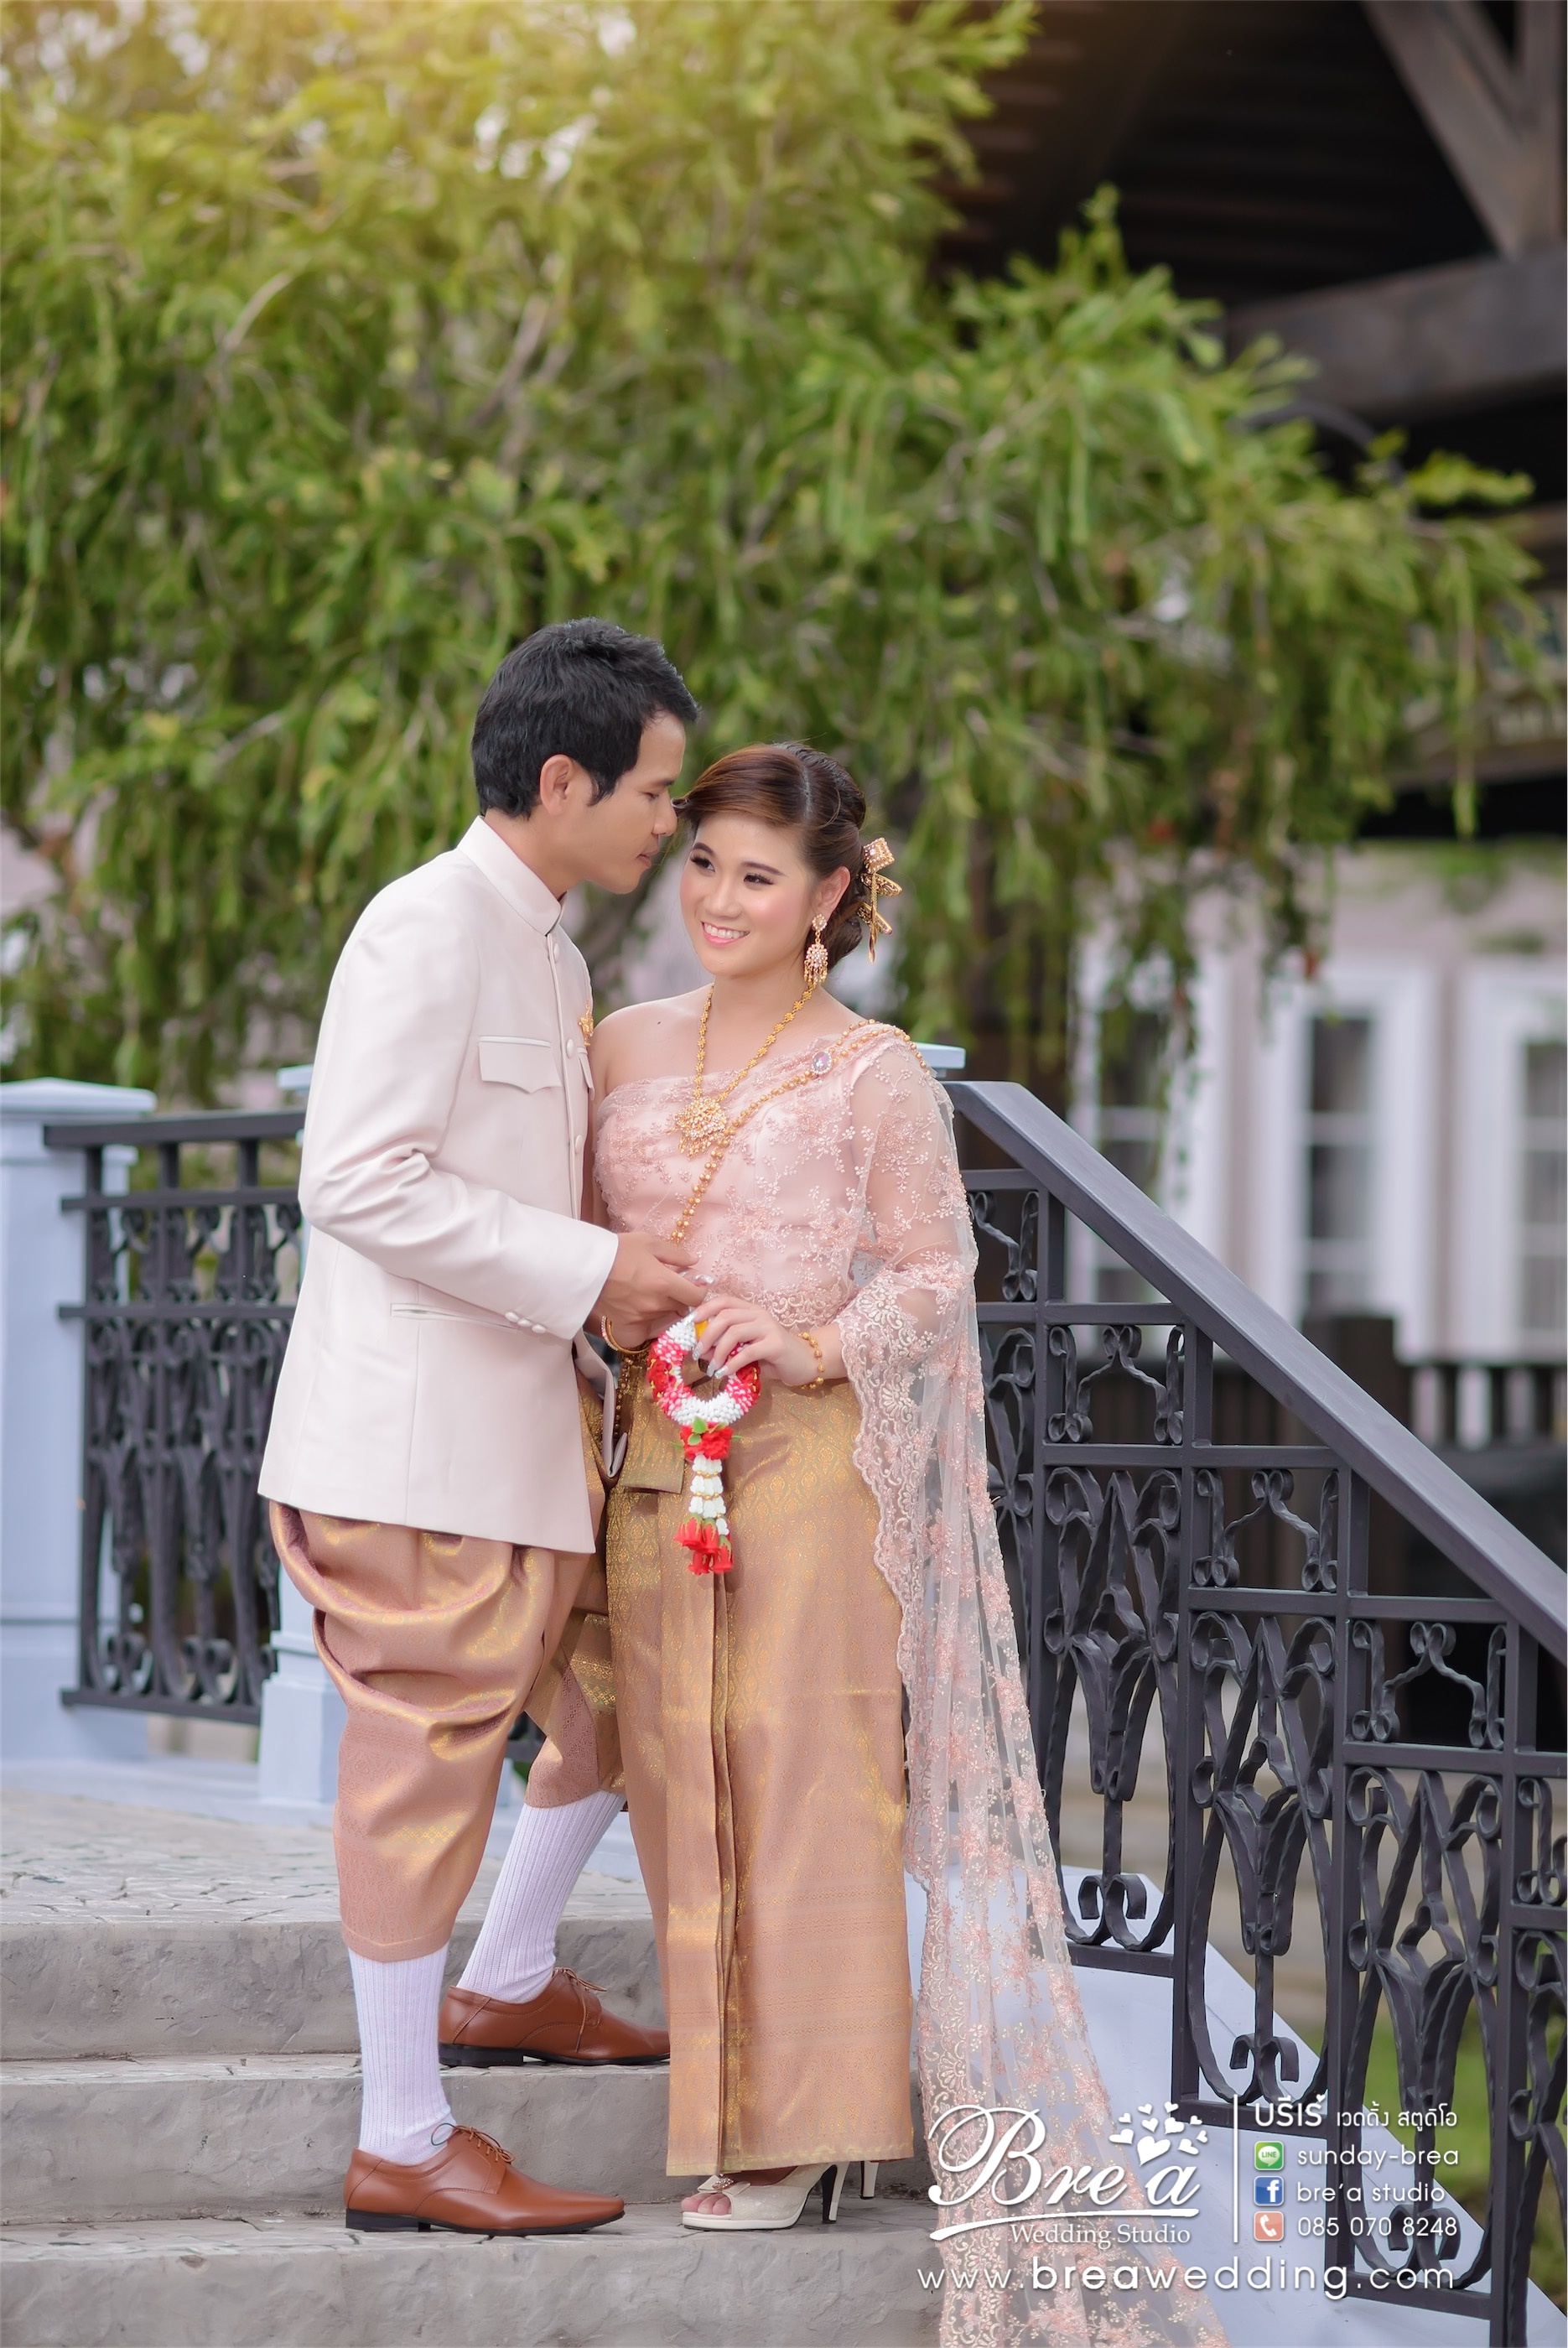 ชุดไทยแต่งงาน ชุดแต่งงานแบบไทย บางใหญ่ บางบัวทอง นนทบุรี